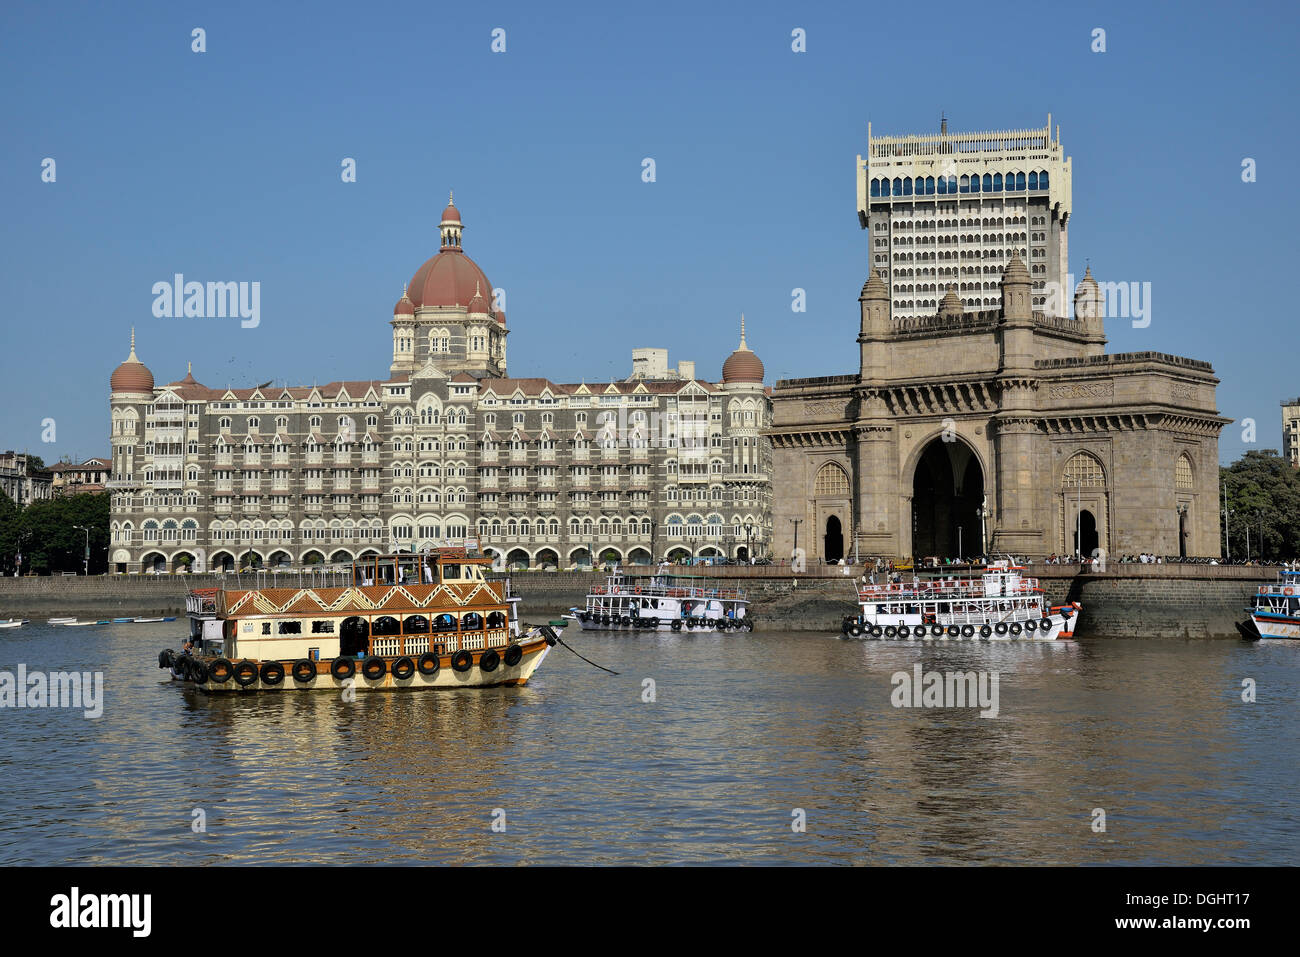 Taj Mahal Hotel and the Gateway of India, Mumbai landmarks, Mumbai, Maharashtra, India Stock Photo